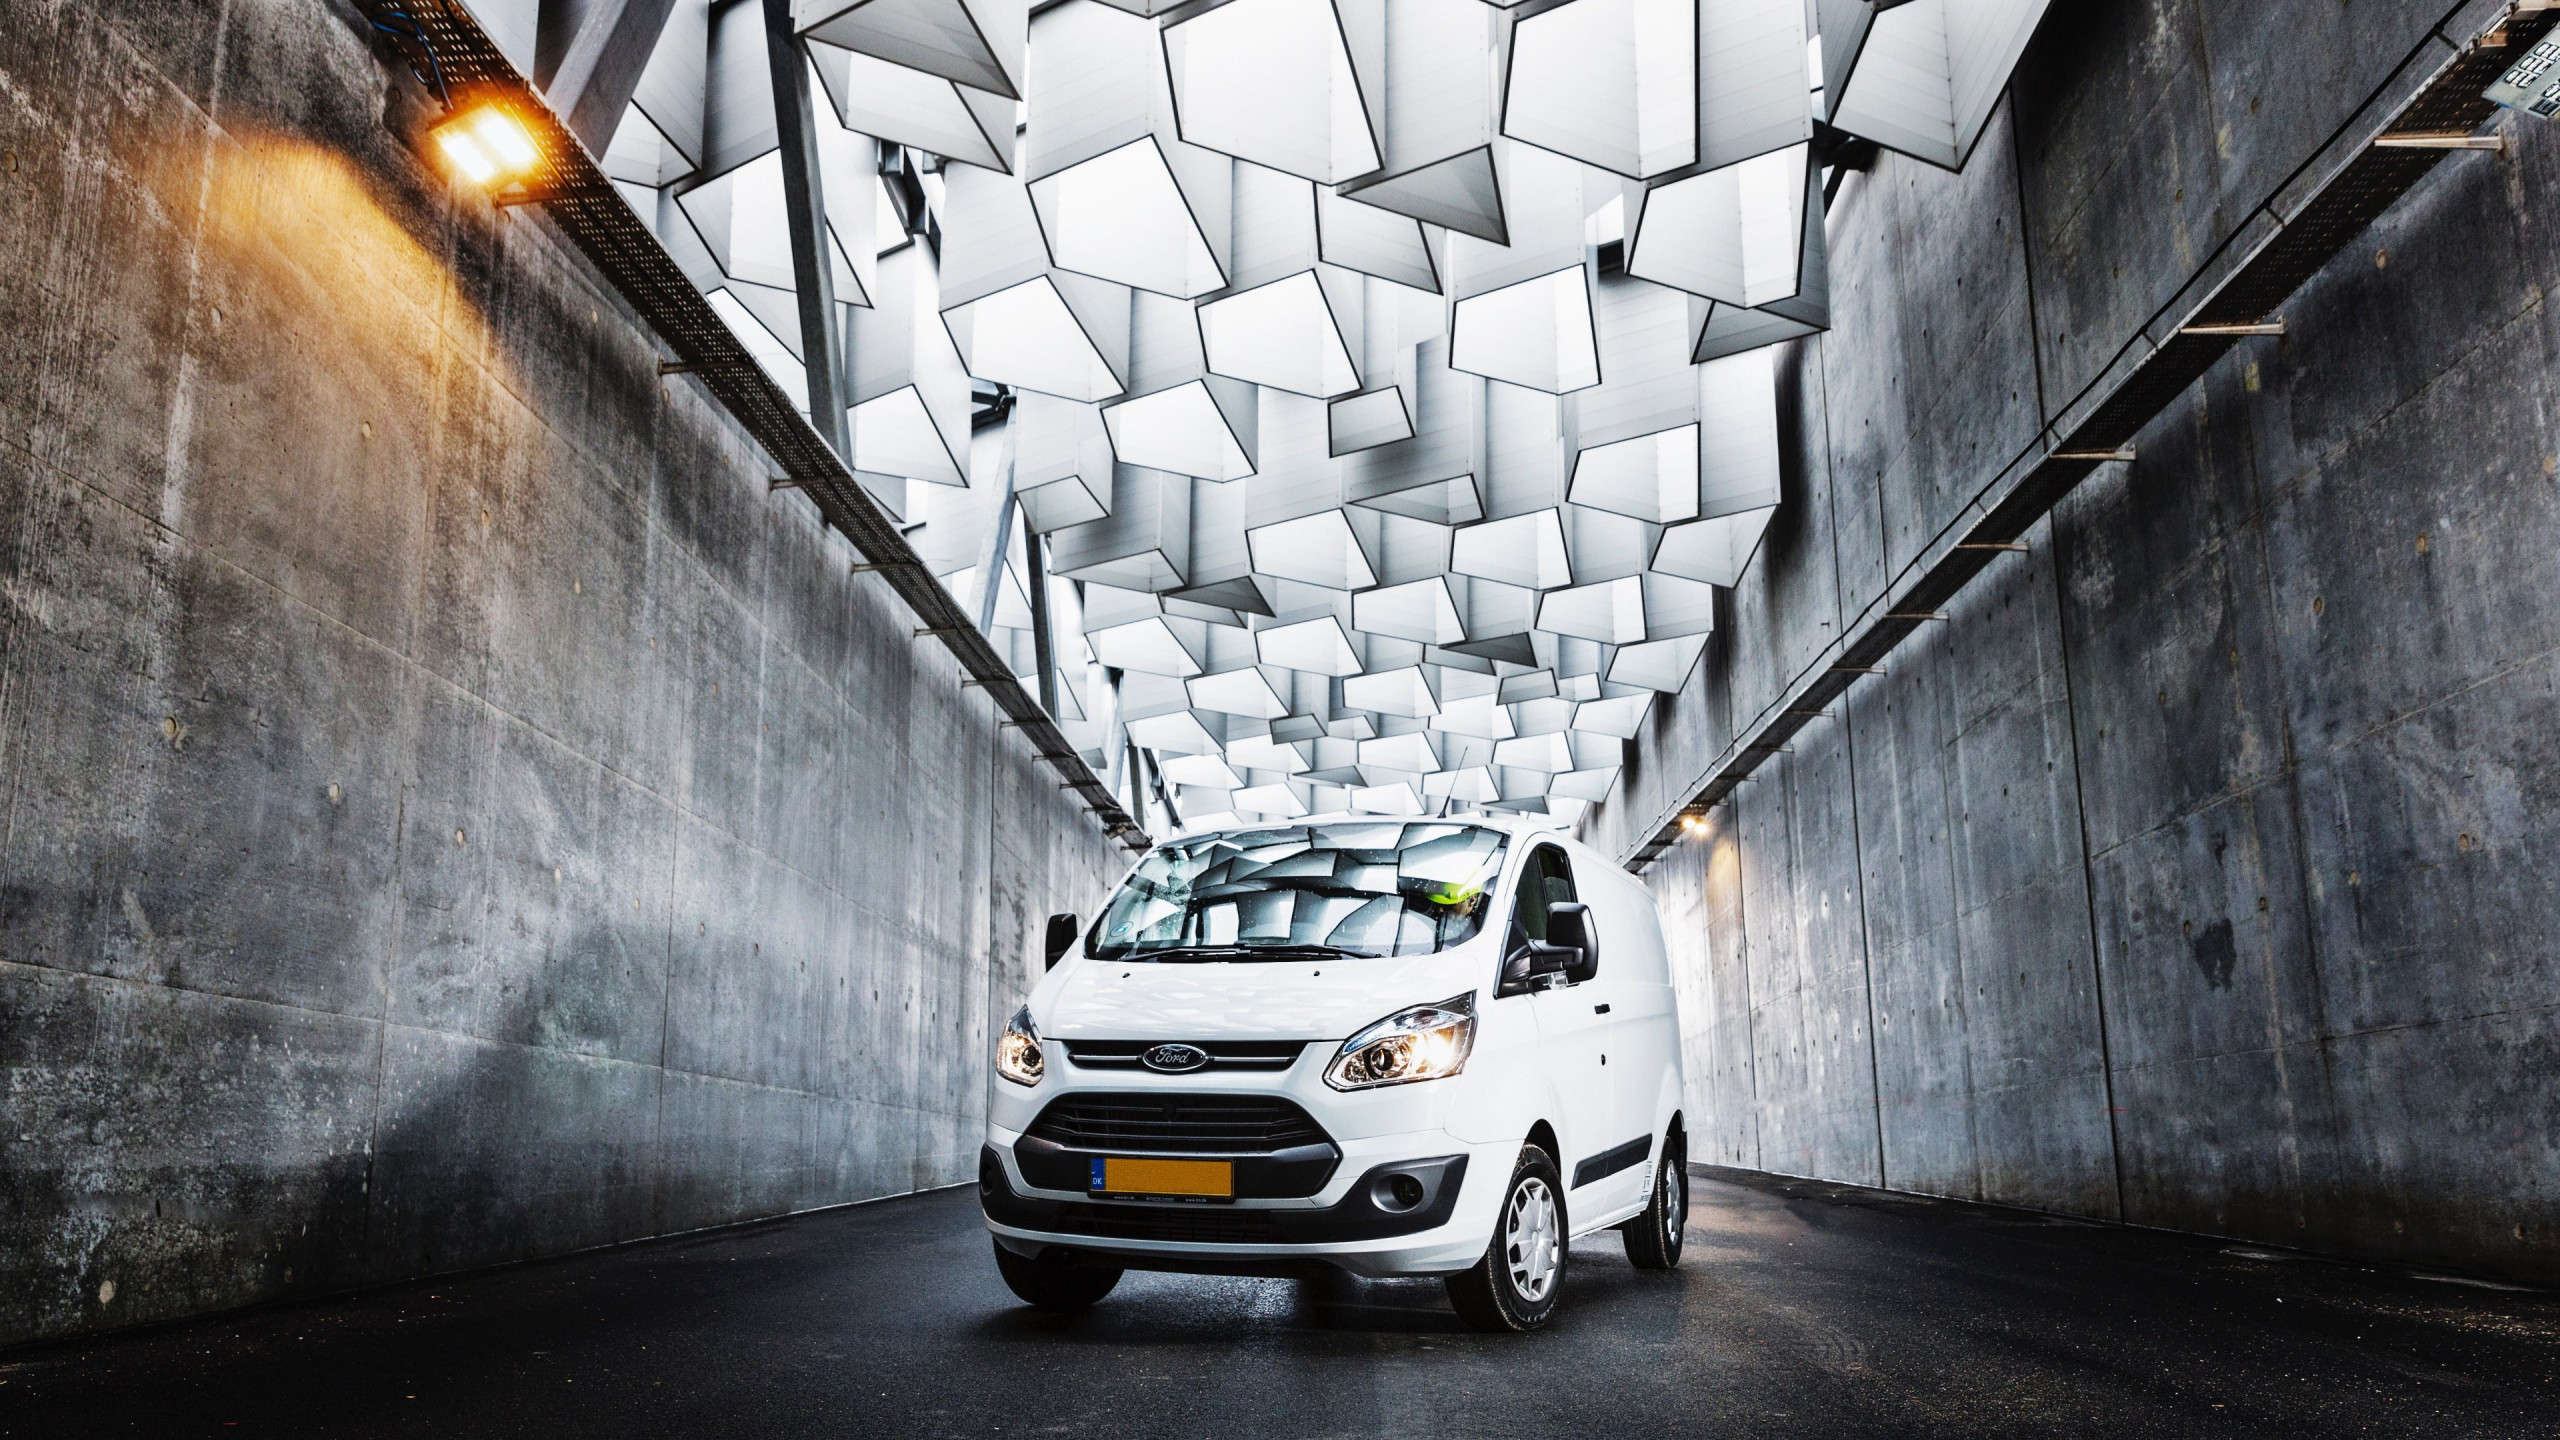 Ford van on the streets of Copenhagen wallpaper 2560x1440